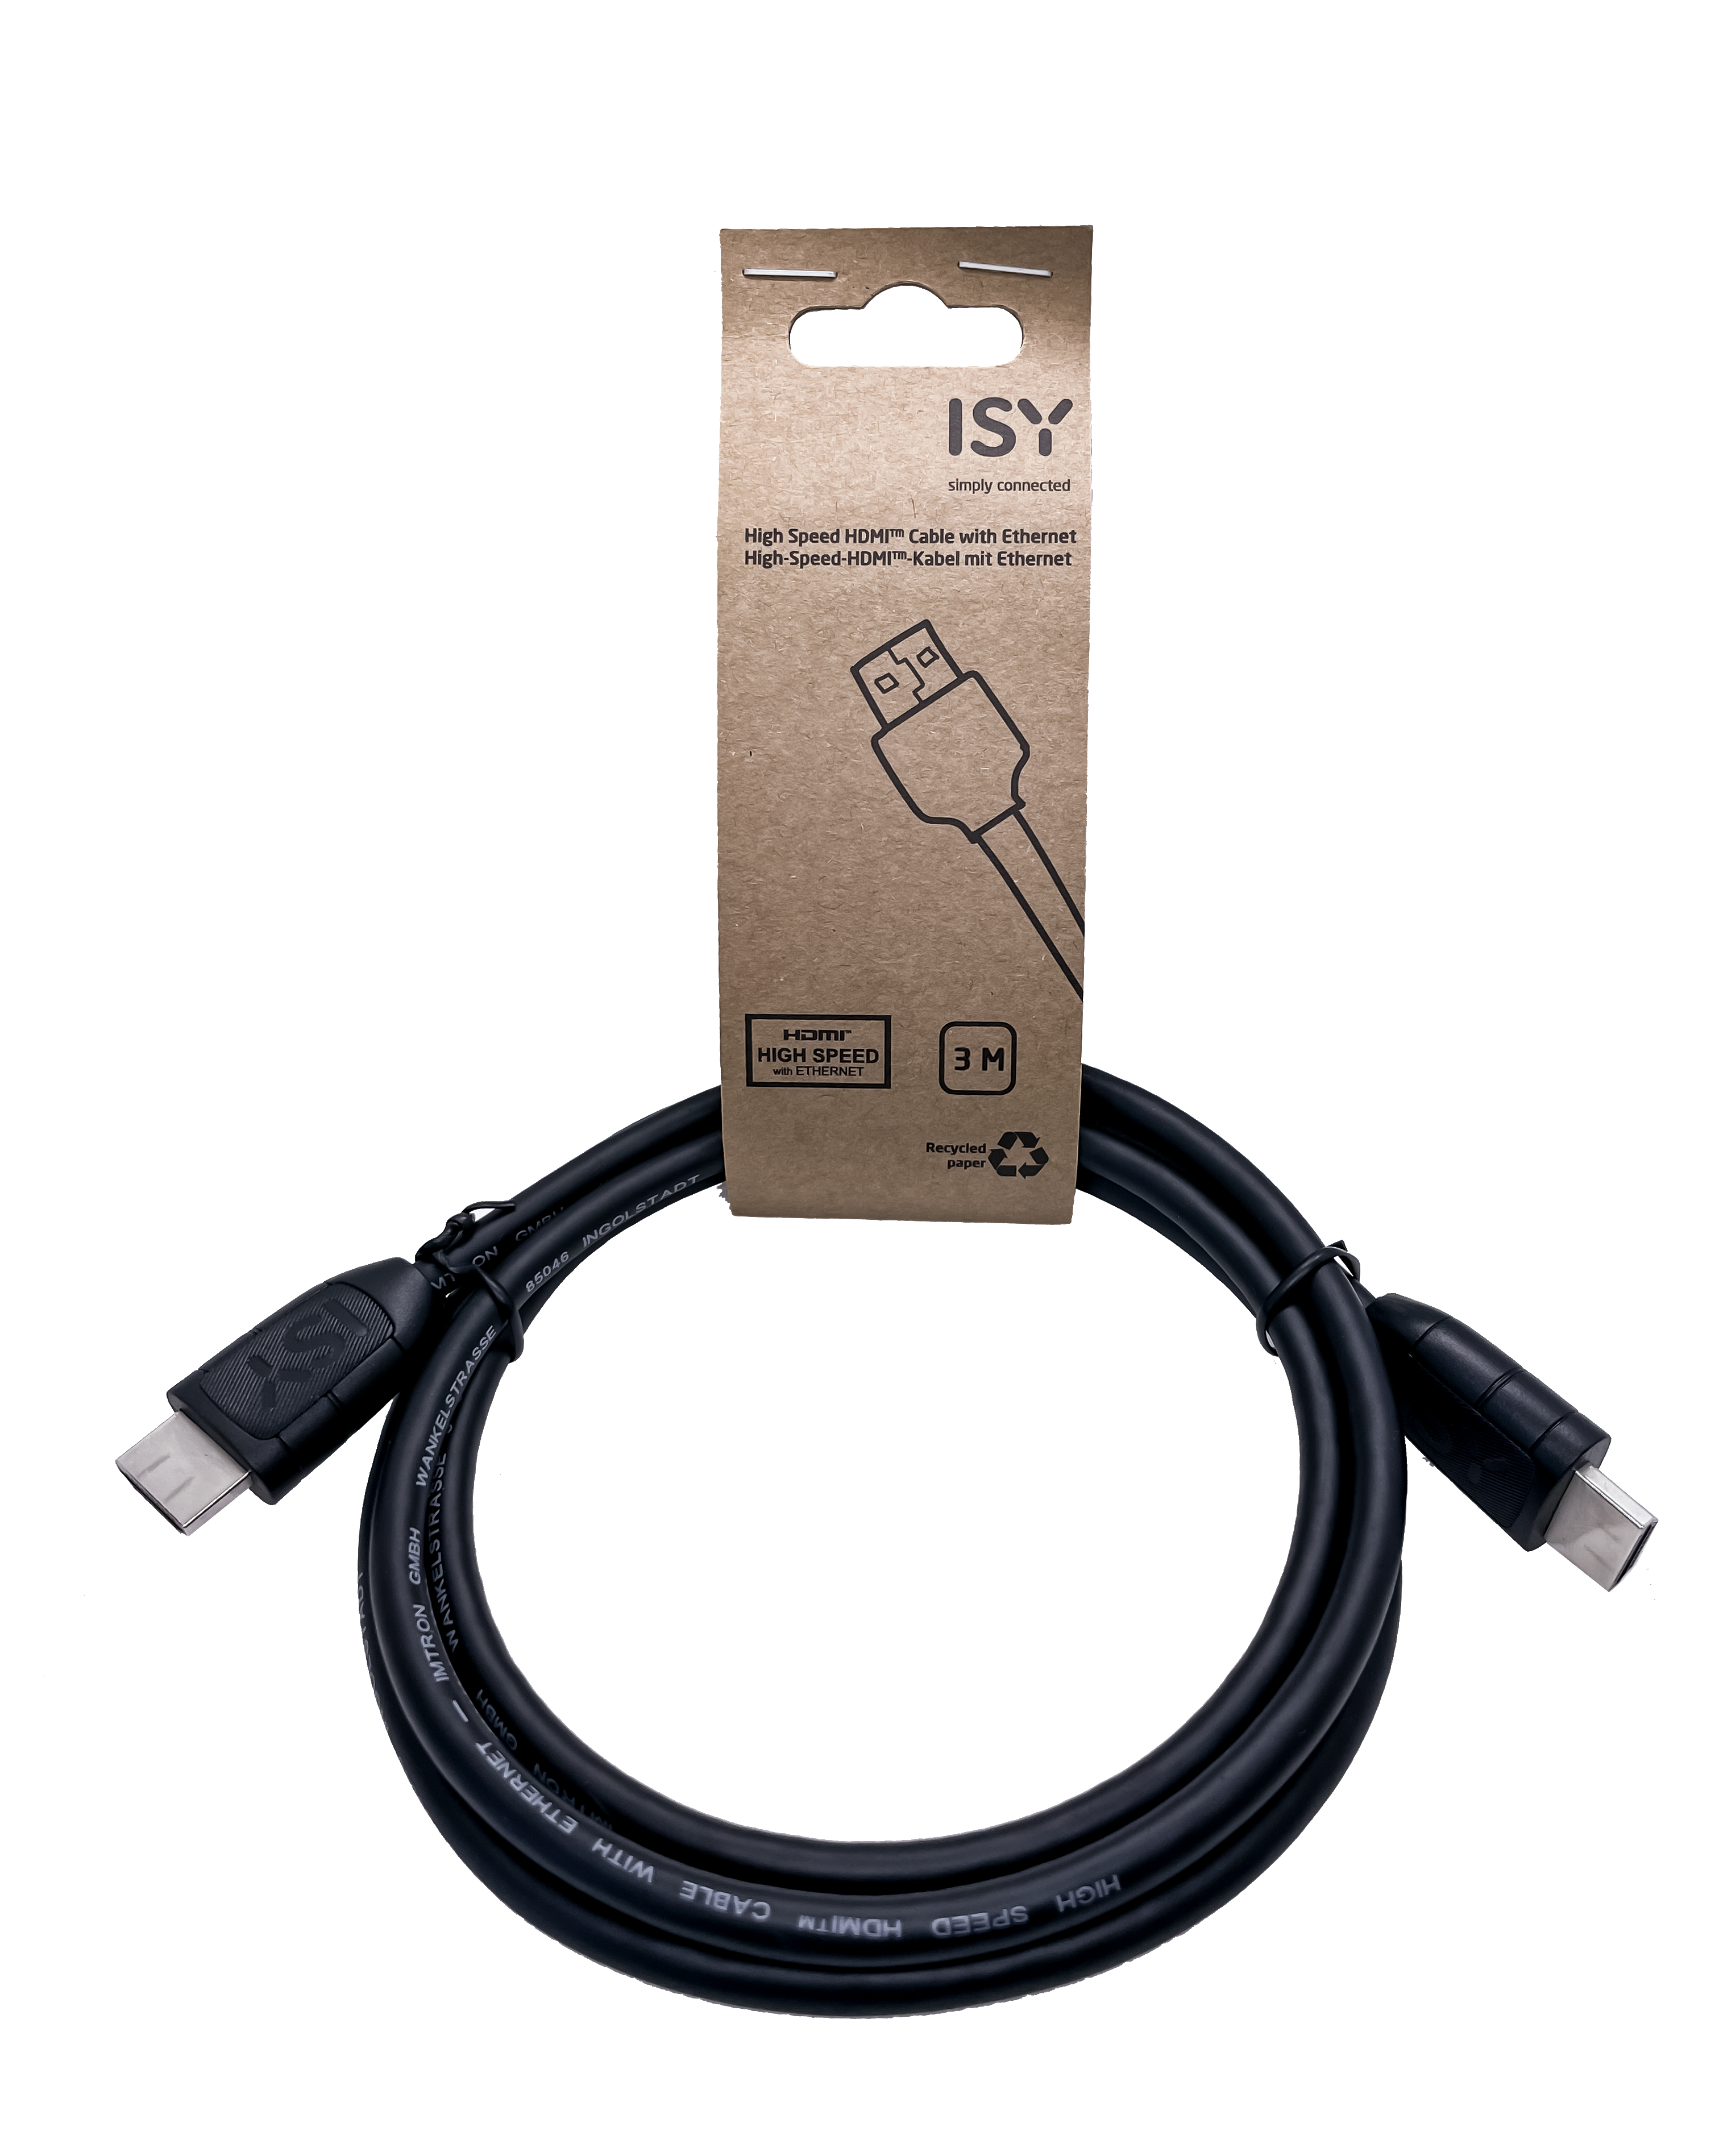 ISY IHD-3400, HDMI-Kabel, 3 m